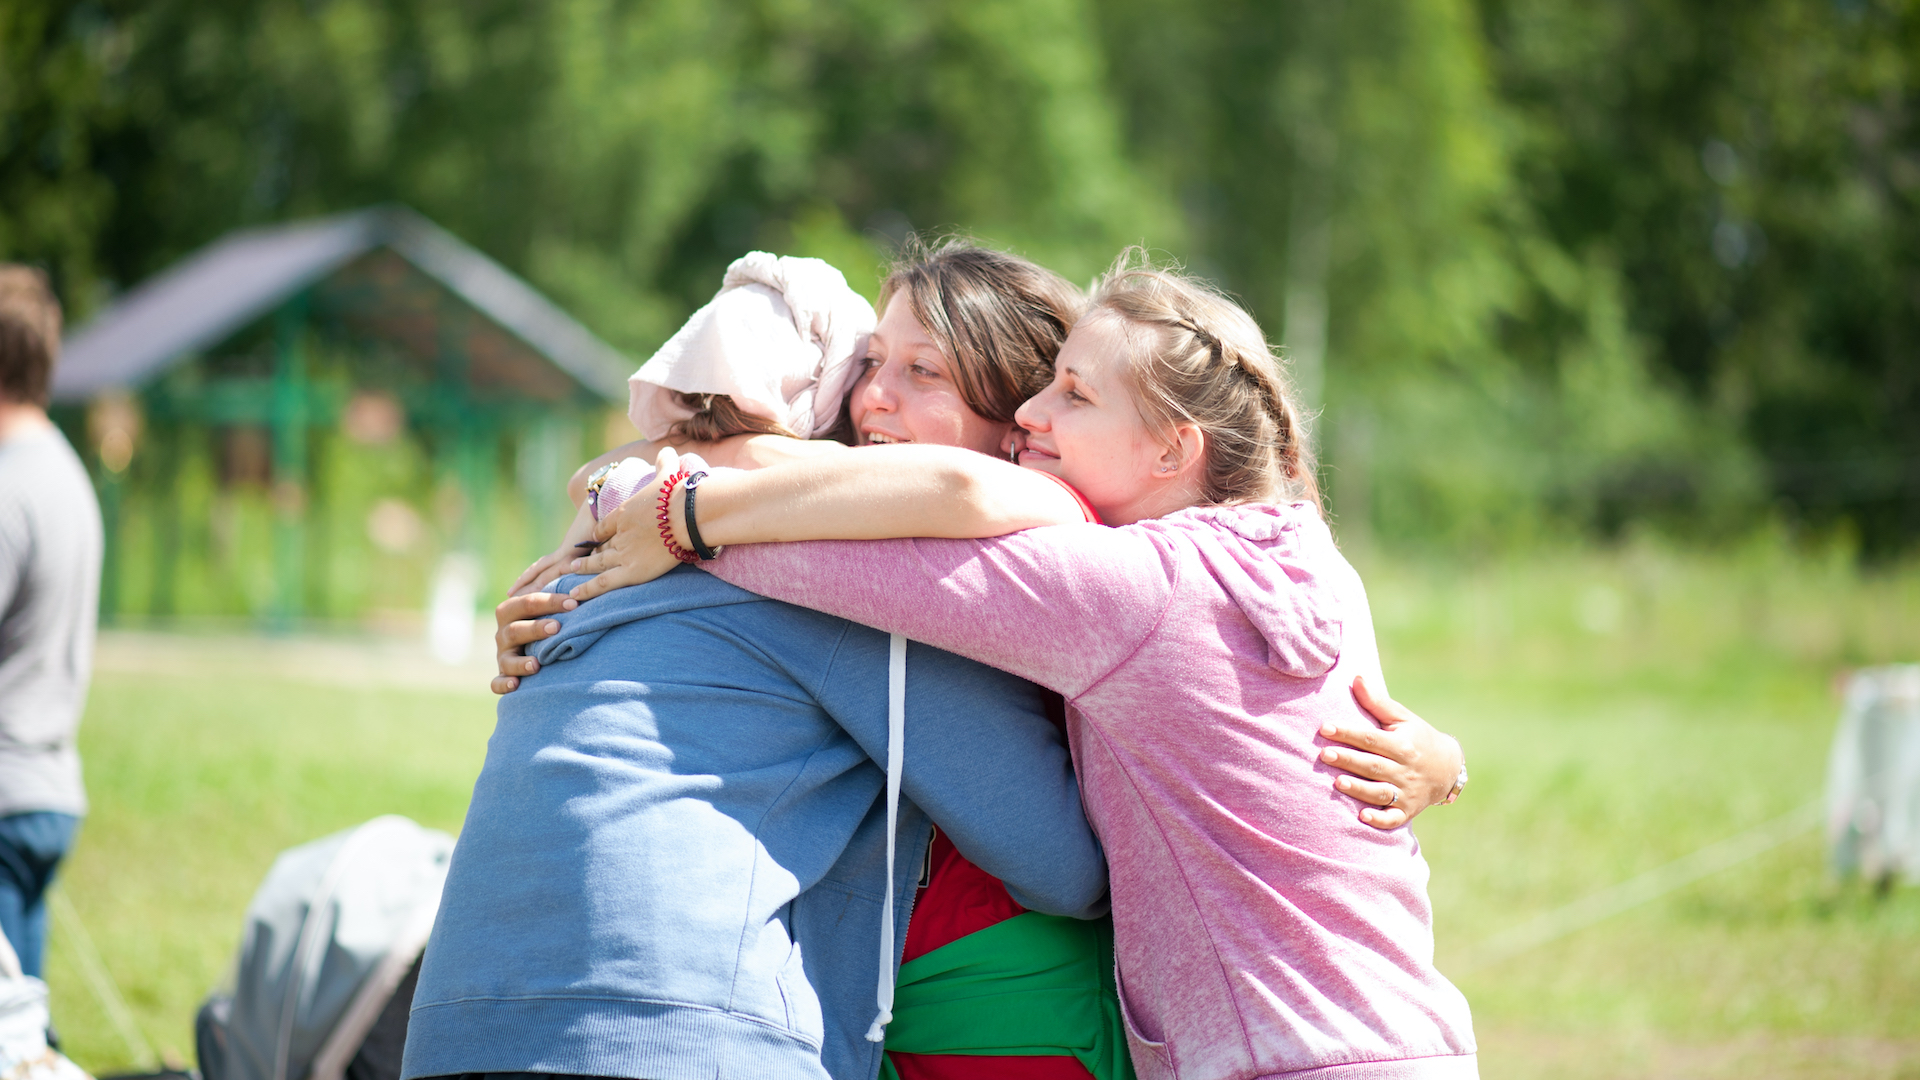 Three women hug in a field